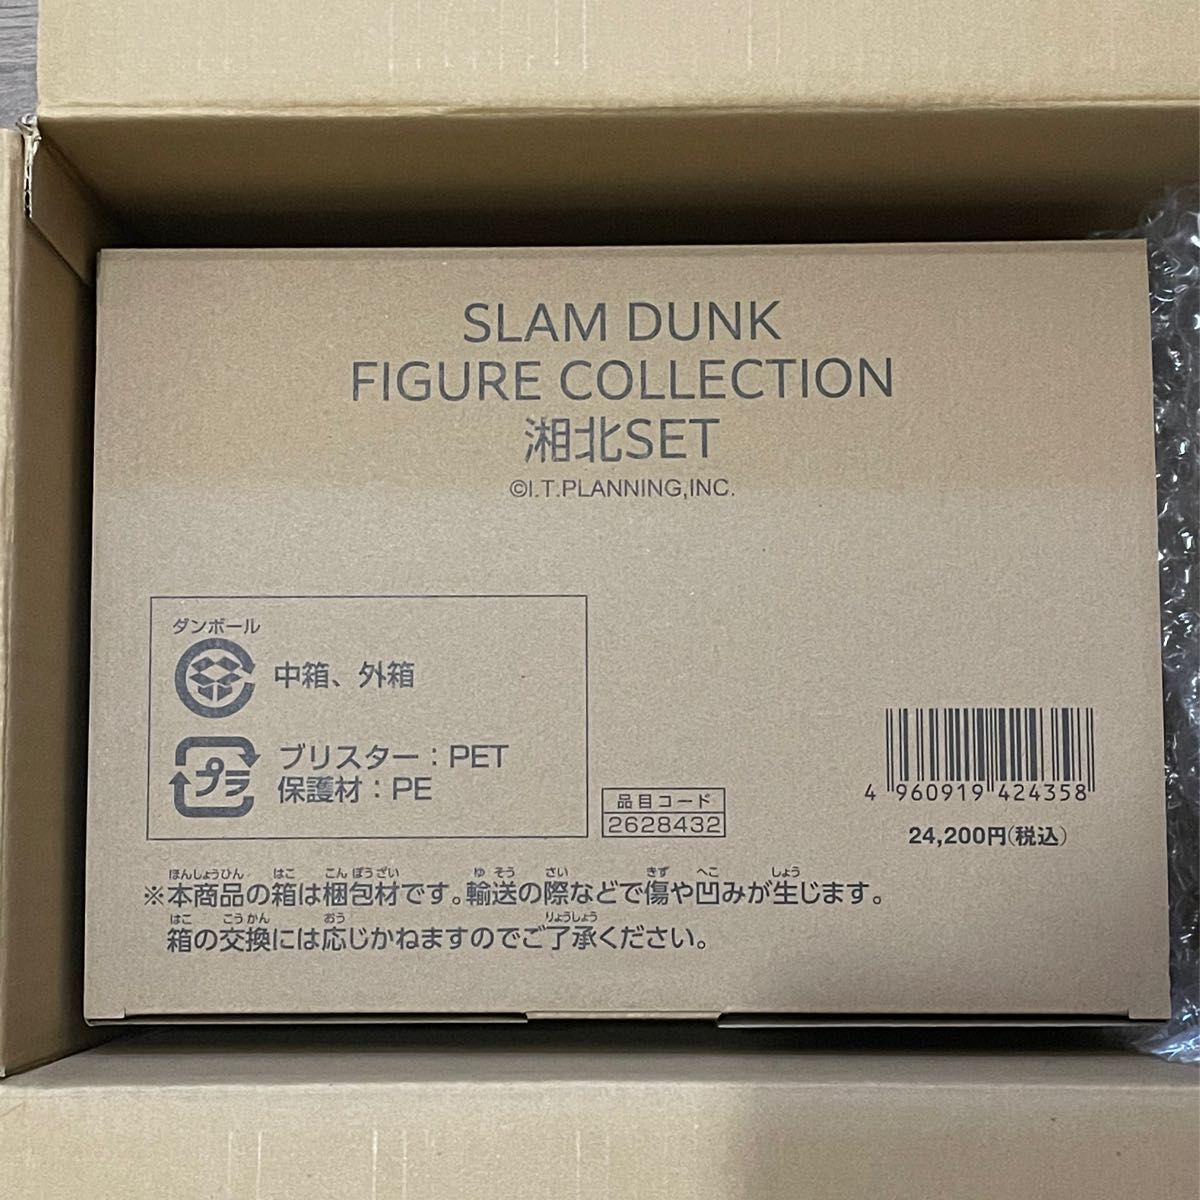 初回版 新品 スラムダンク フィギュア コレクション 湘北SET 全17種